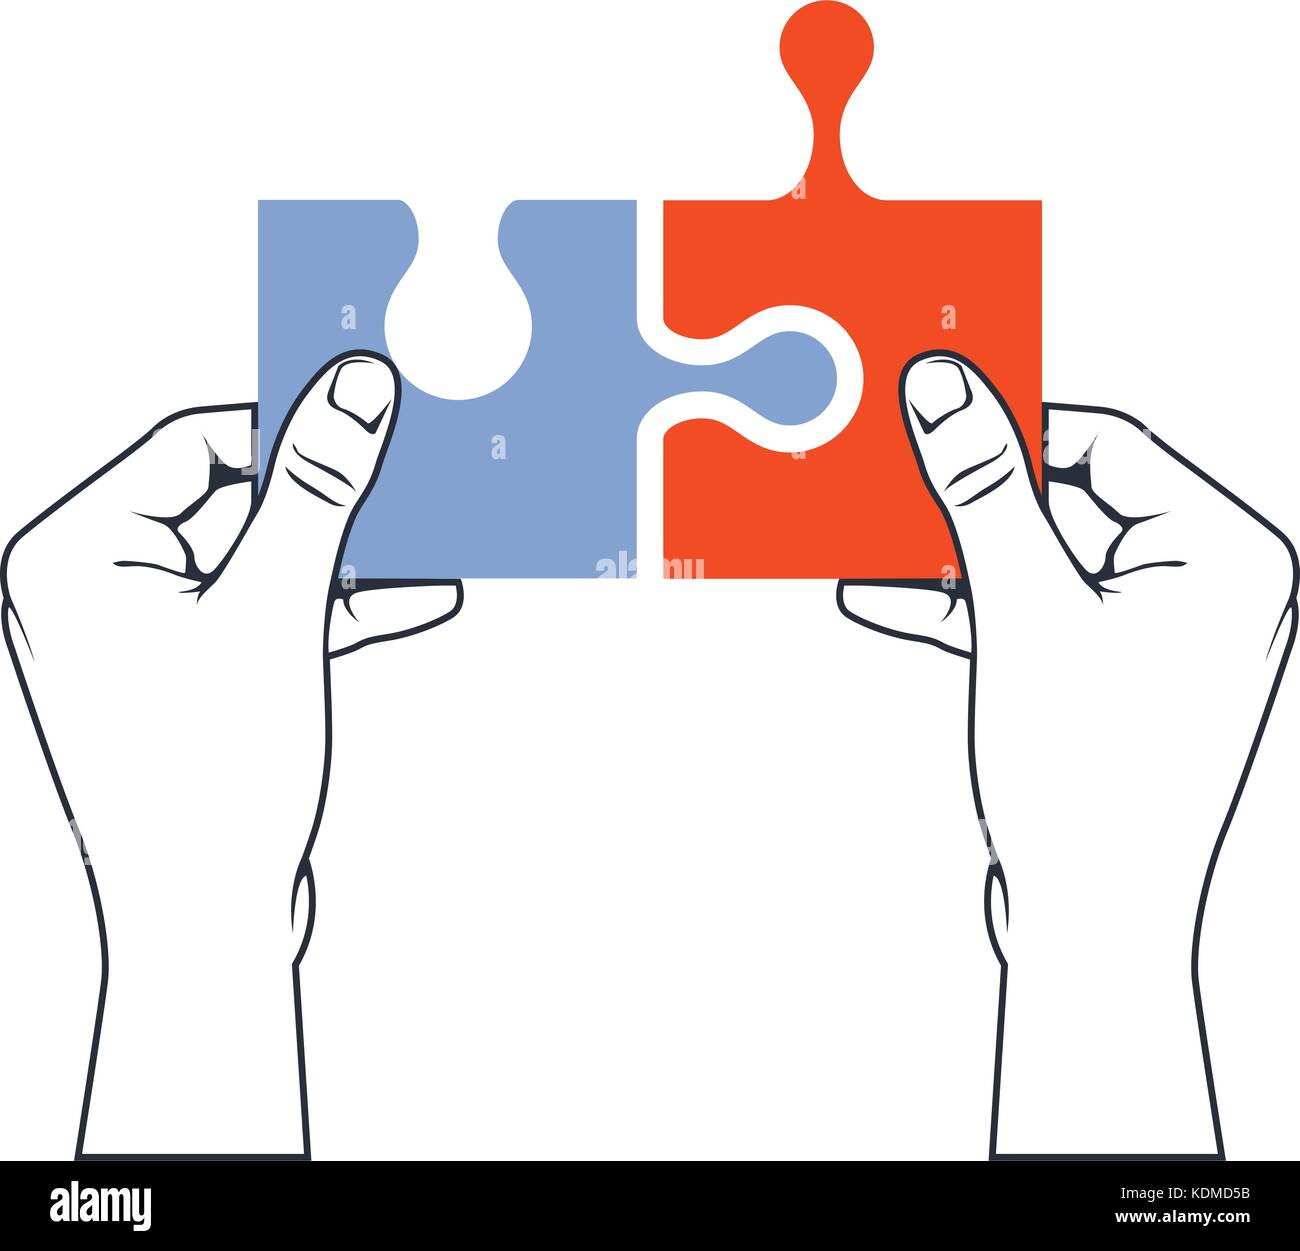 Die Hände verbinden Puzzleteil - Vereinigung und Verschmelzung Konzept Stock Vektor